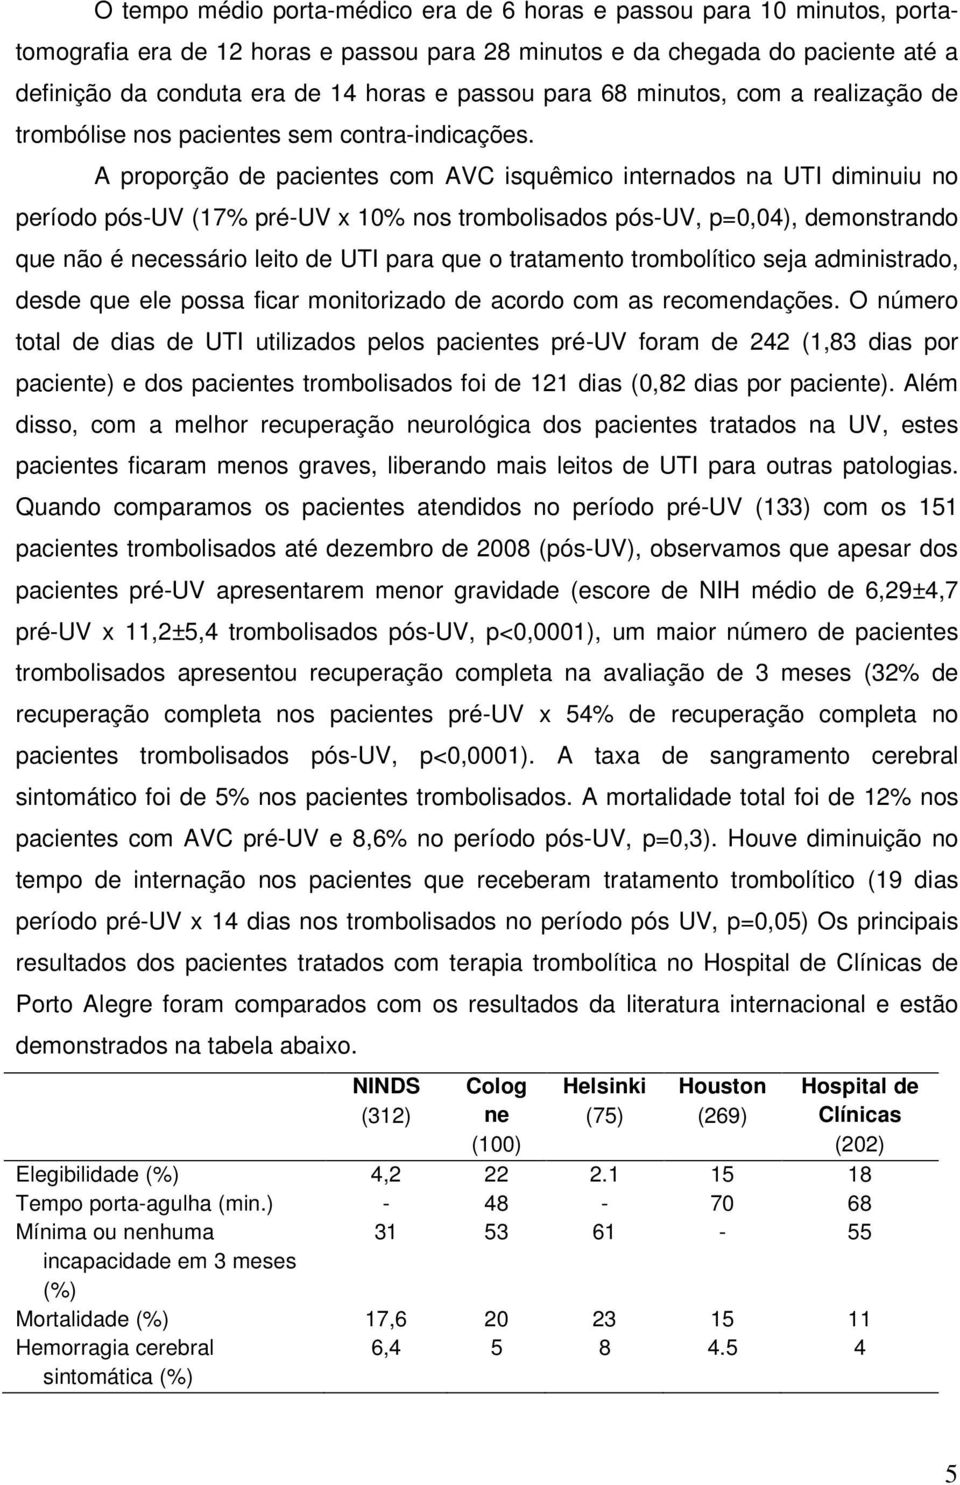 A proporção de pacientes com AVC isquêmico internados na UTI diminuiu no período pós-uv (17% pré-uv x 10% nos trombolisados pós-uv, p=0,04), demonstrando que não é necessário leito de UTI para que o